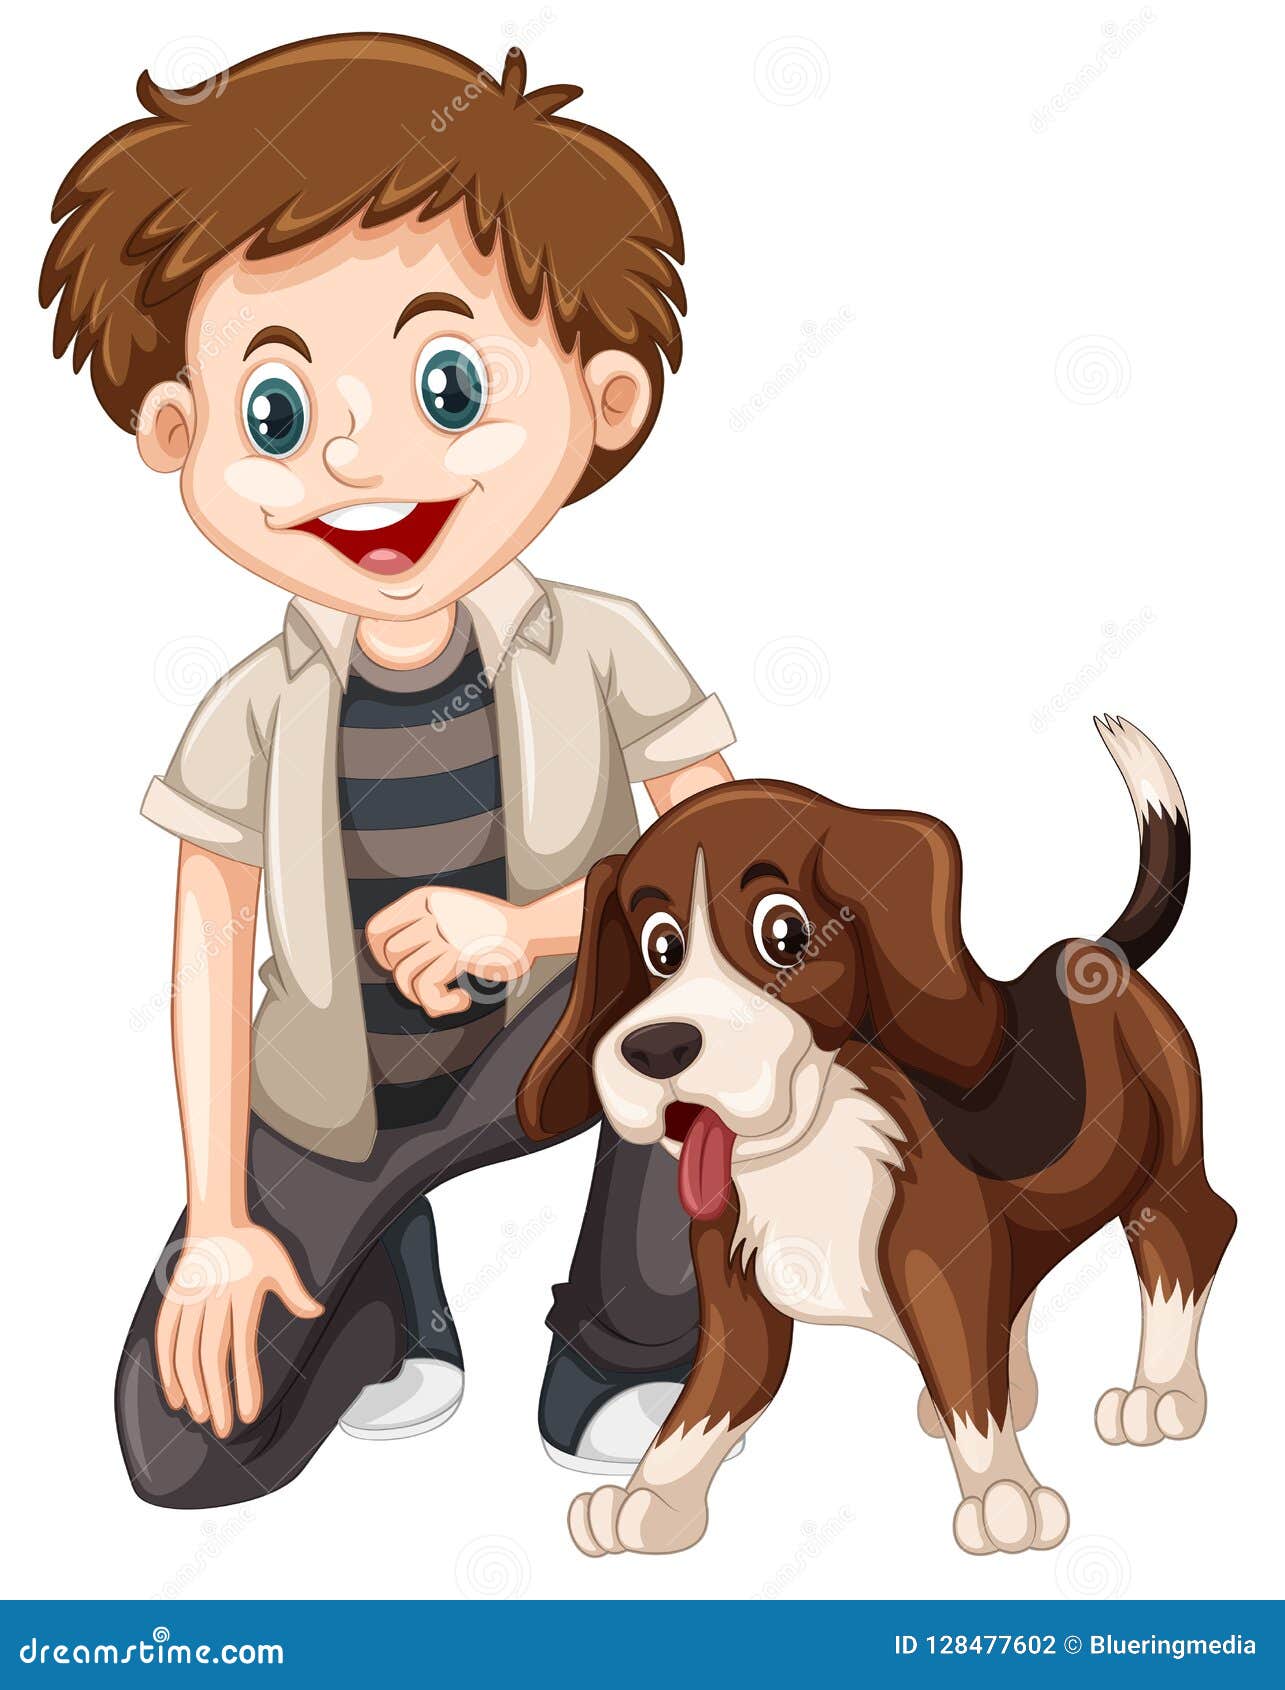 男孩和小狗图片大全-男孩和小狗高清图片下载-觅知网